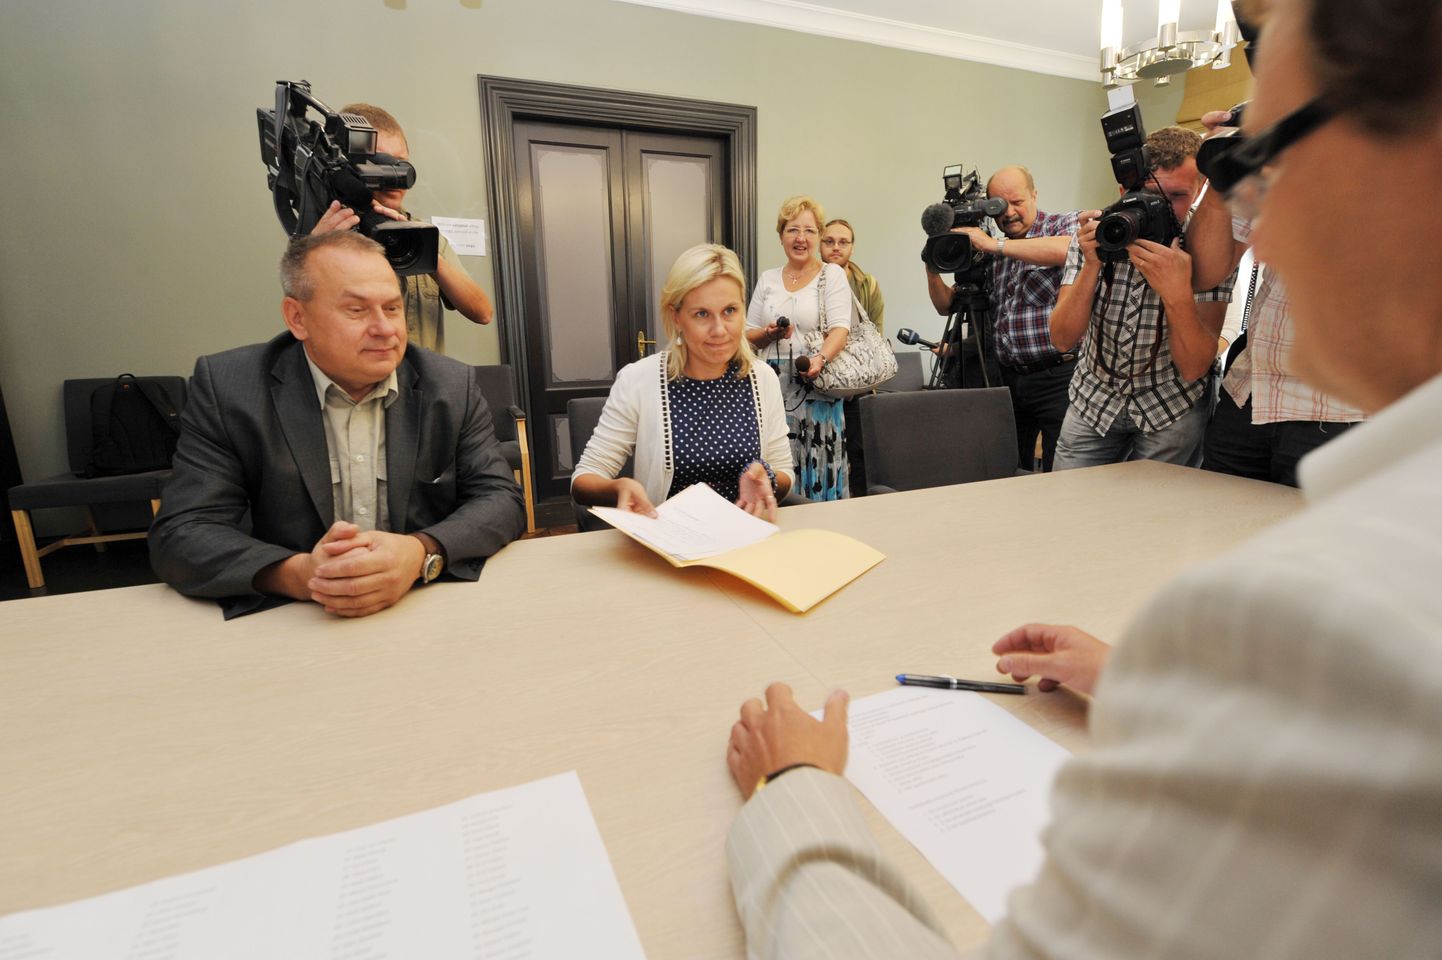 Keskerakonna fraktsiooni esindajad Aivar Riisalu ja Kadri Simson andsid  valimiskogule üle Indrek Tarandi presidendiks kandideerimise avalduse.